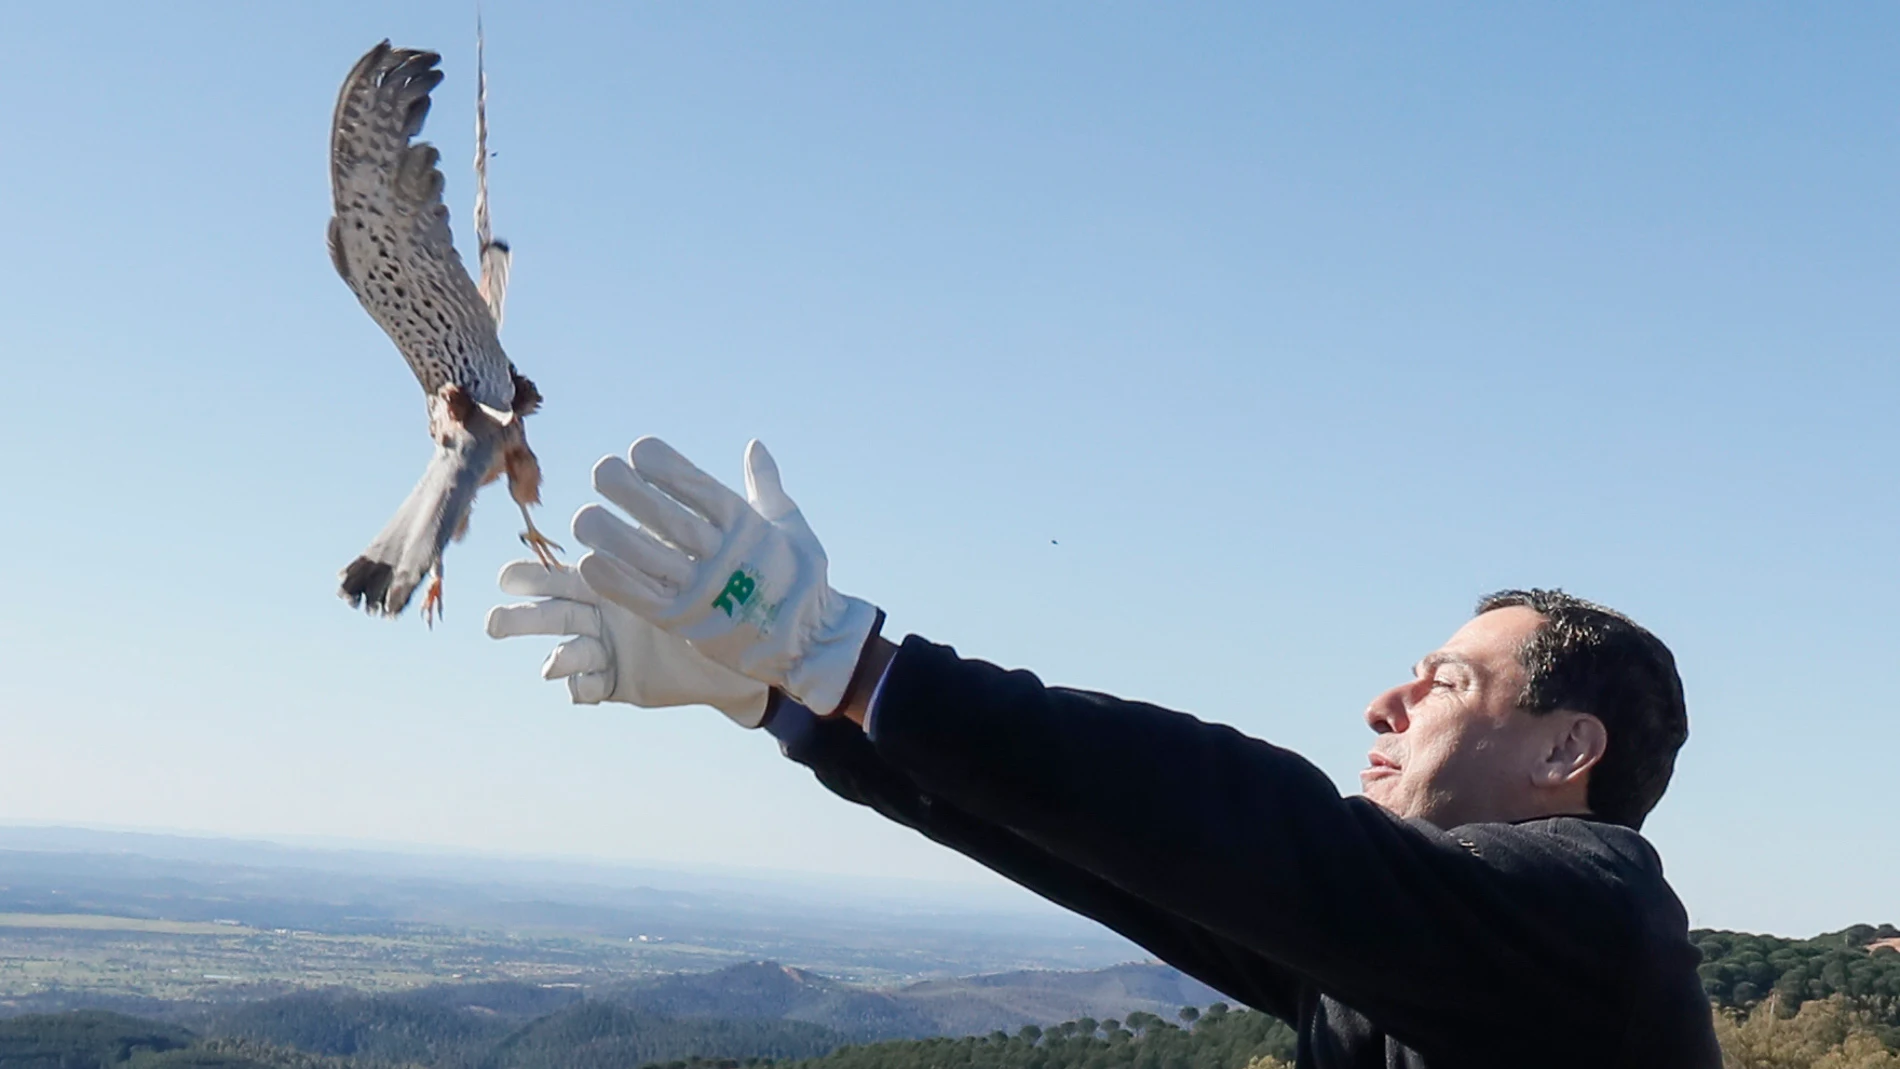 El presidente de la Junta de Andalucía, Juanma Moreno participa este domingo en la suelta de un buitre leonado y una pareja de cernícalos en el paraje de Sierra Pelada, en el término municipal de Aroche, Huelva